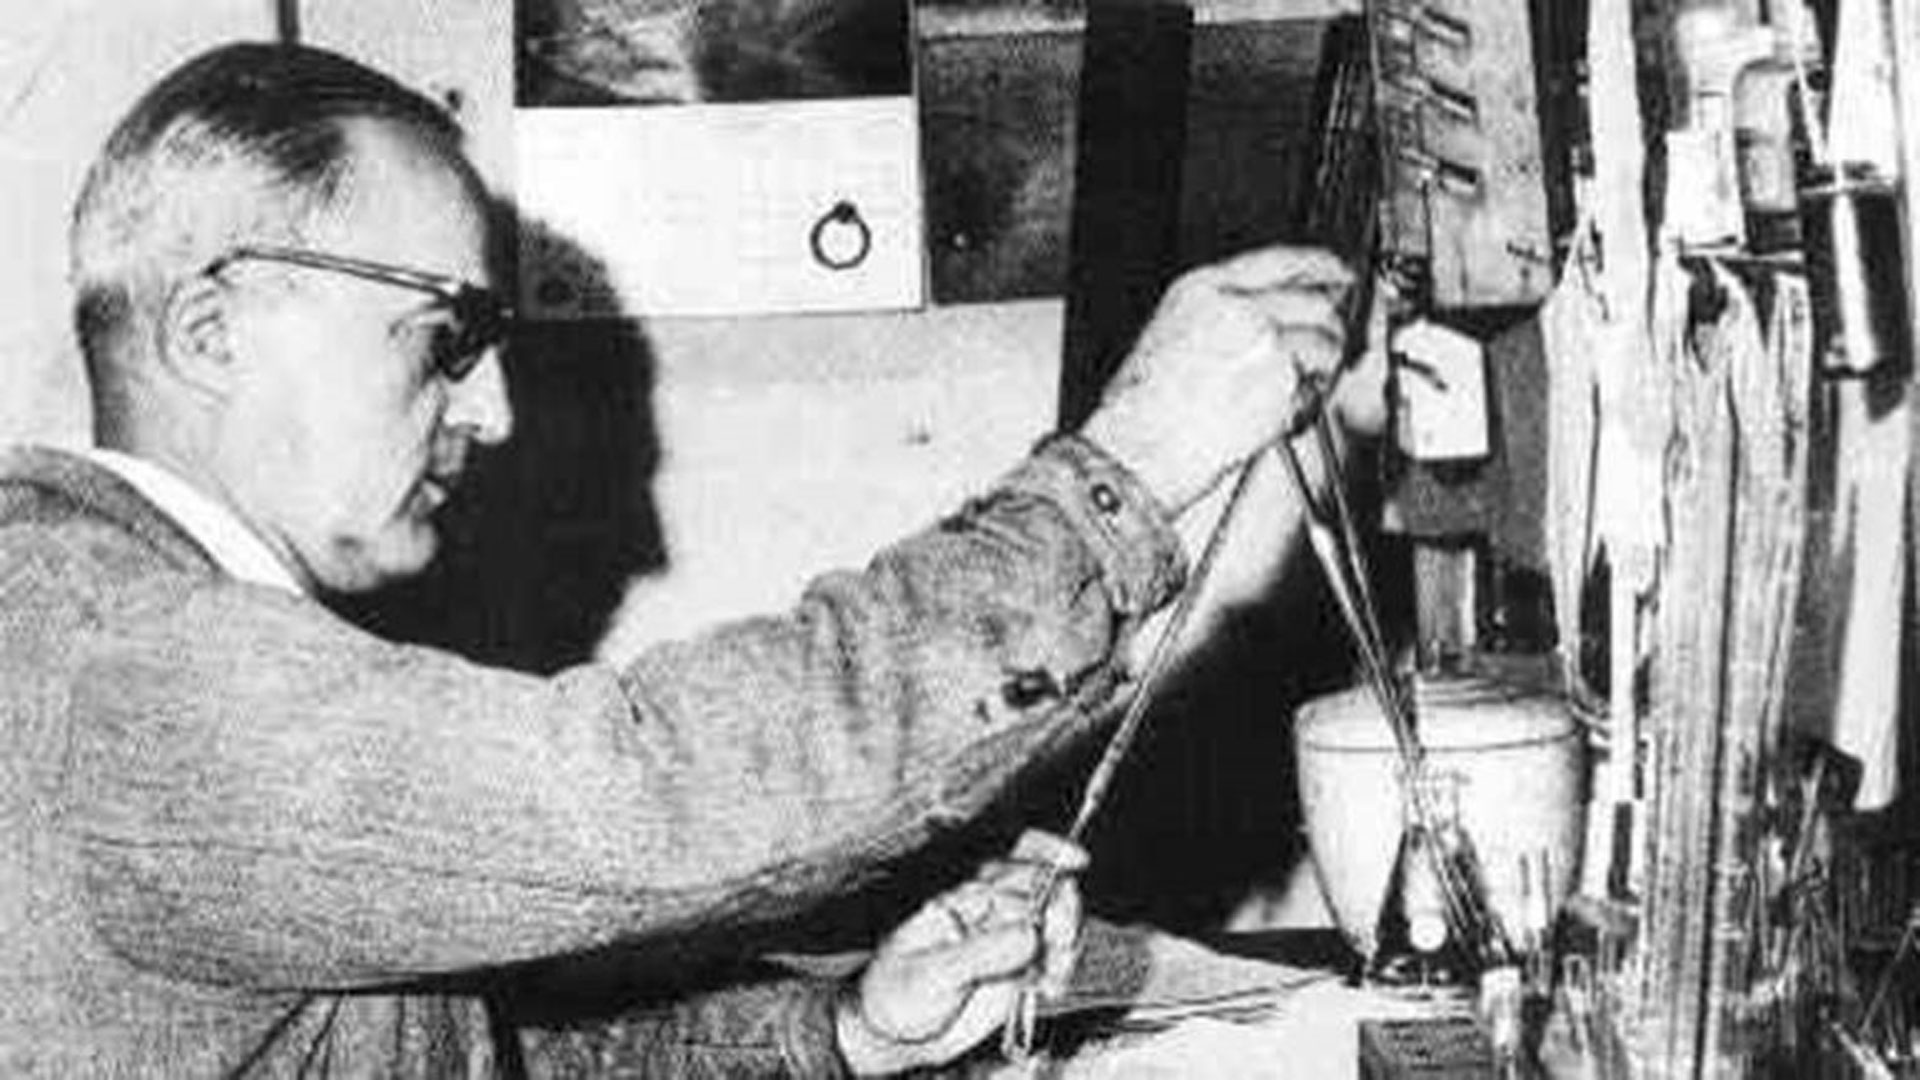 El investigador Luis Federico Leloir, que ganó el Premio Nobel de Química de 1970 residió en la propiedad que ahora está en venta